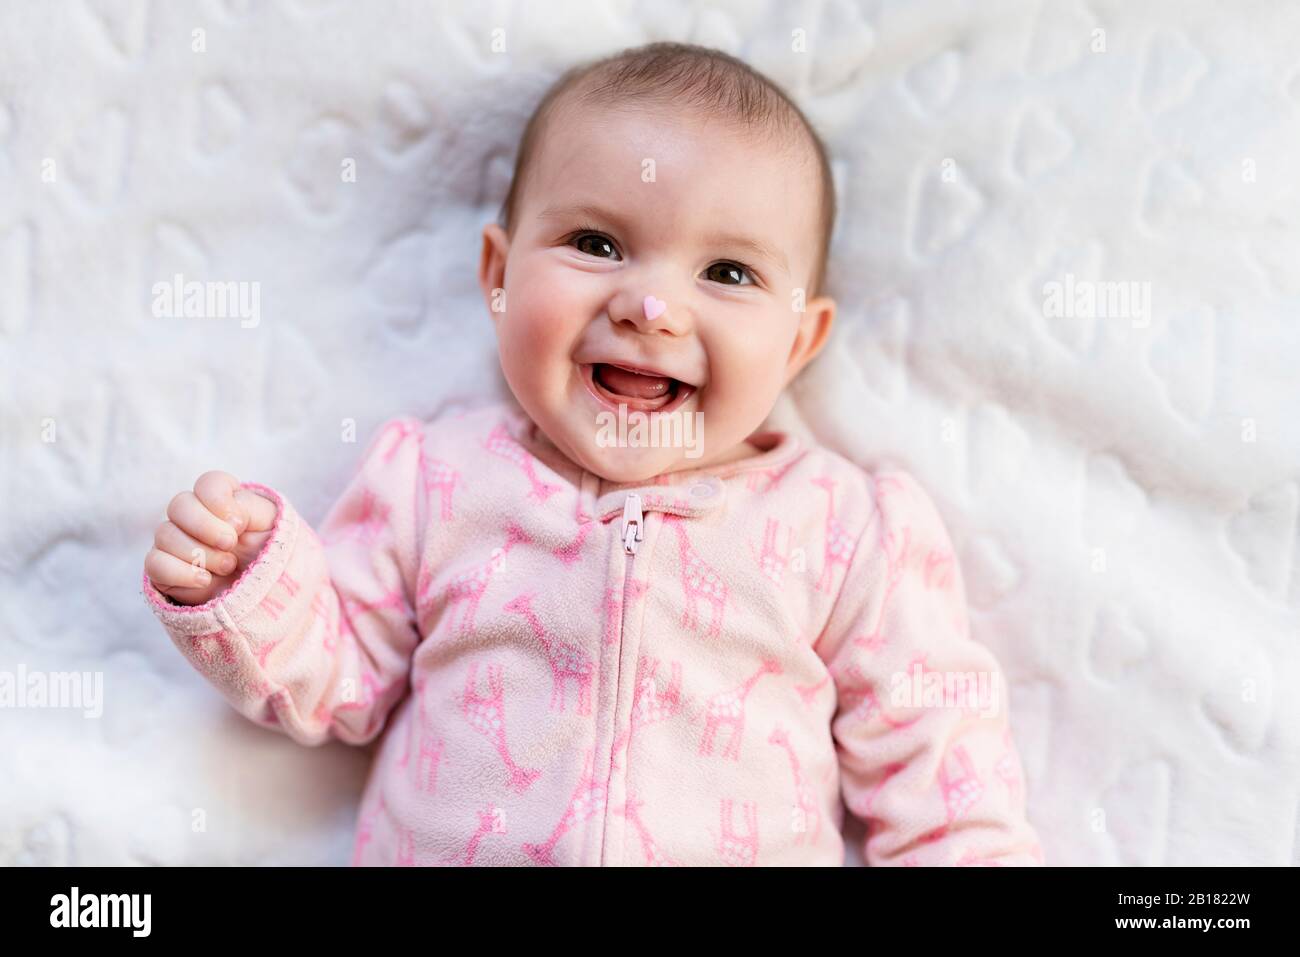 Portrait des lachenden Mädchens mit rosa herzförmigen Süßigkeiten auf der Nase Stockfoto